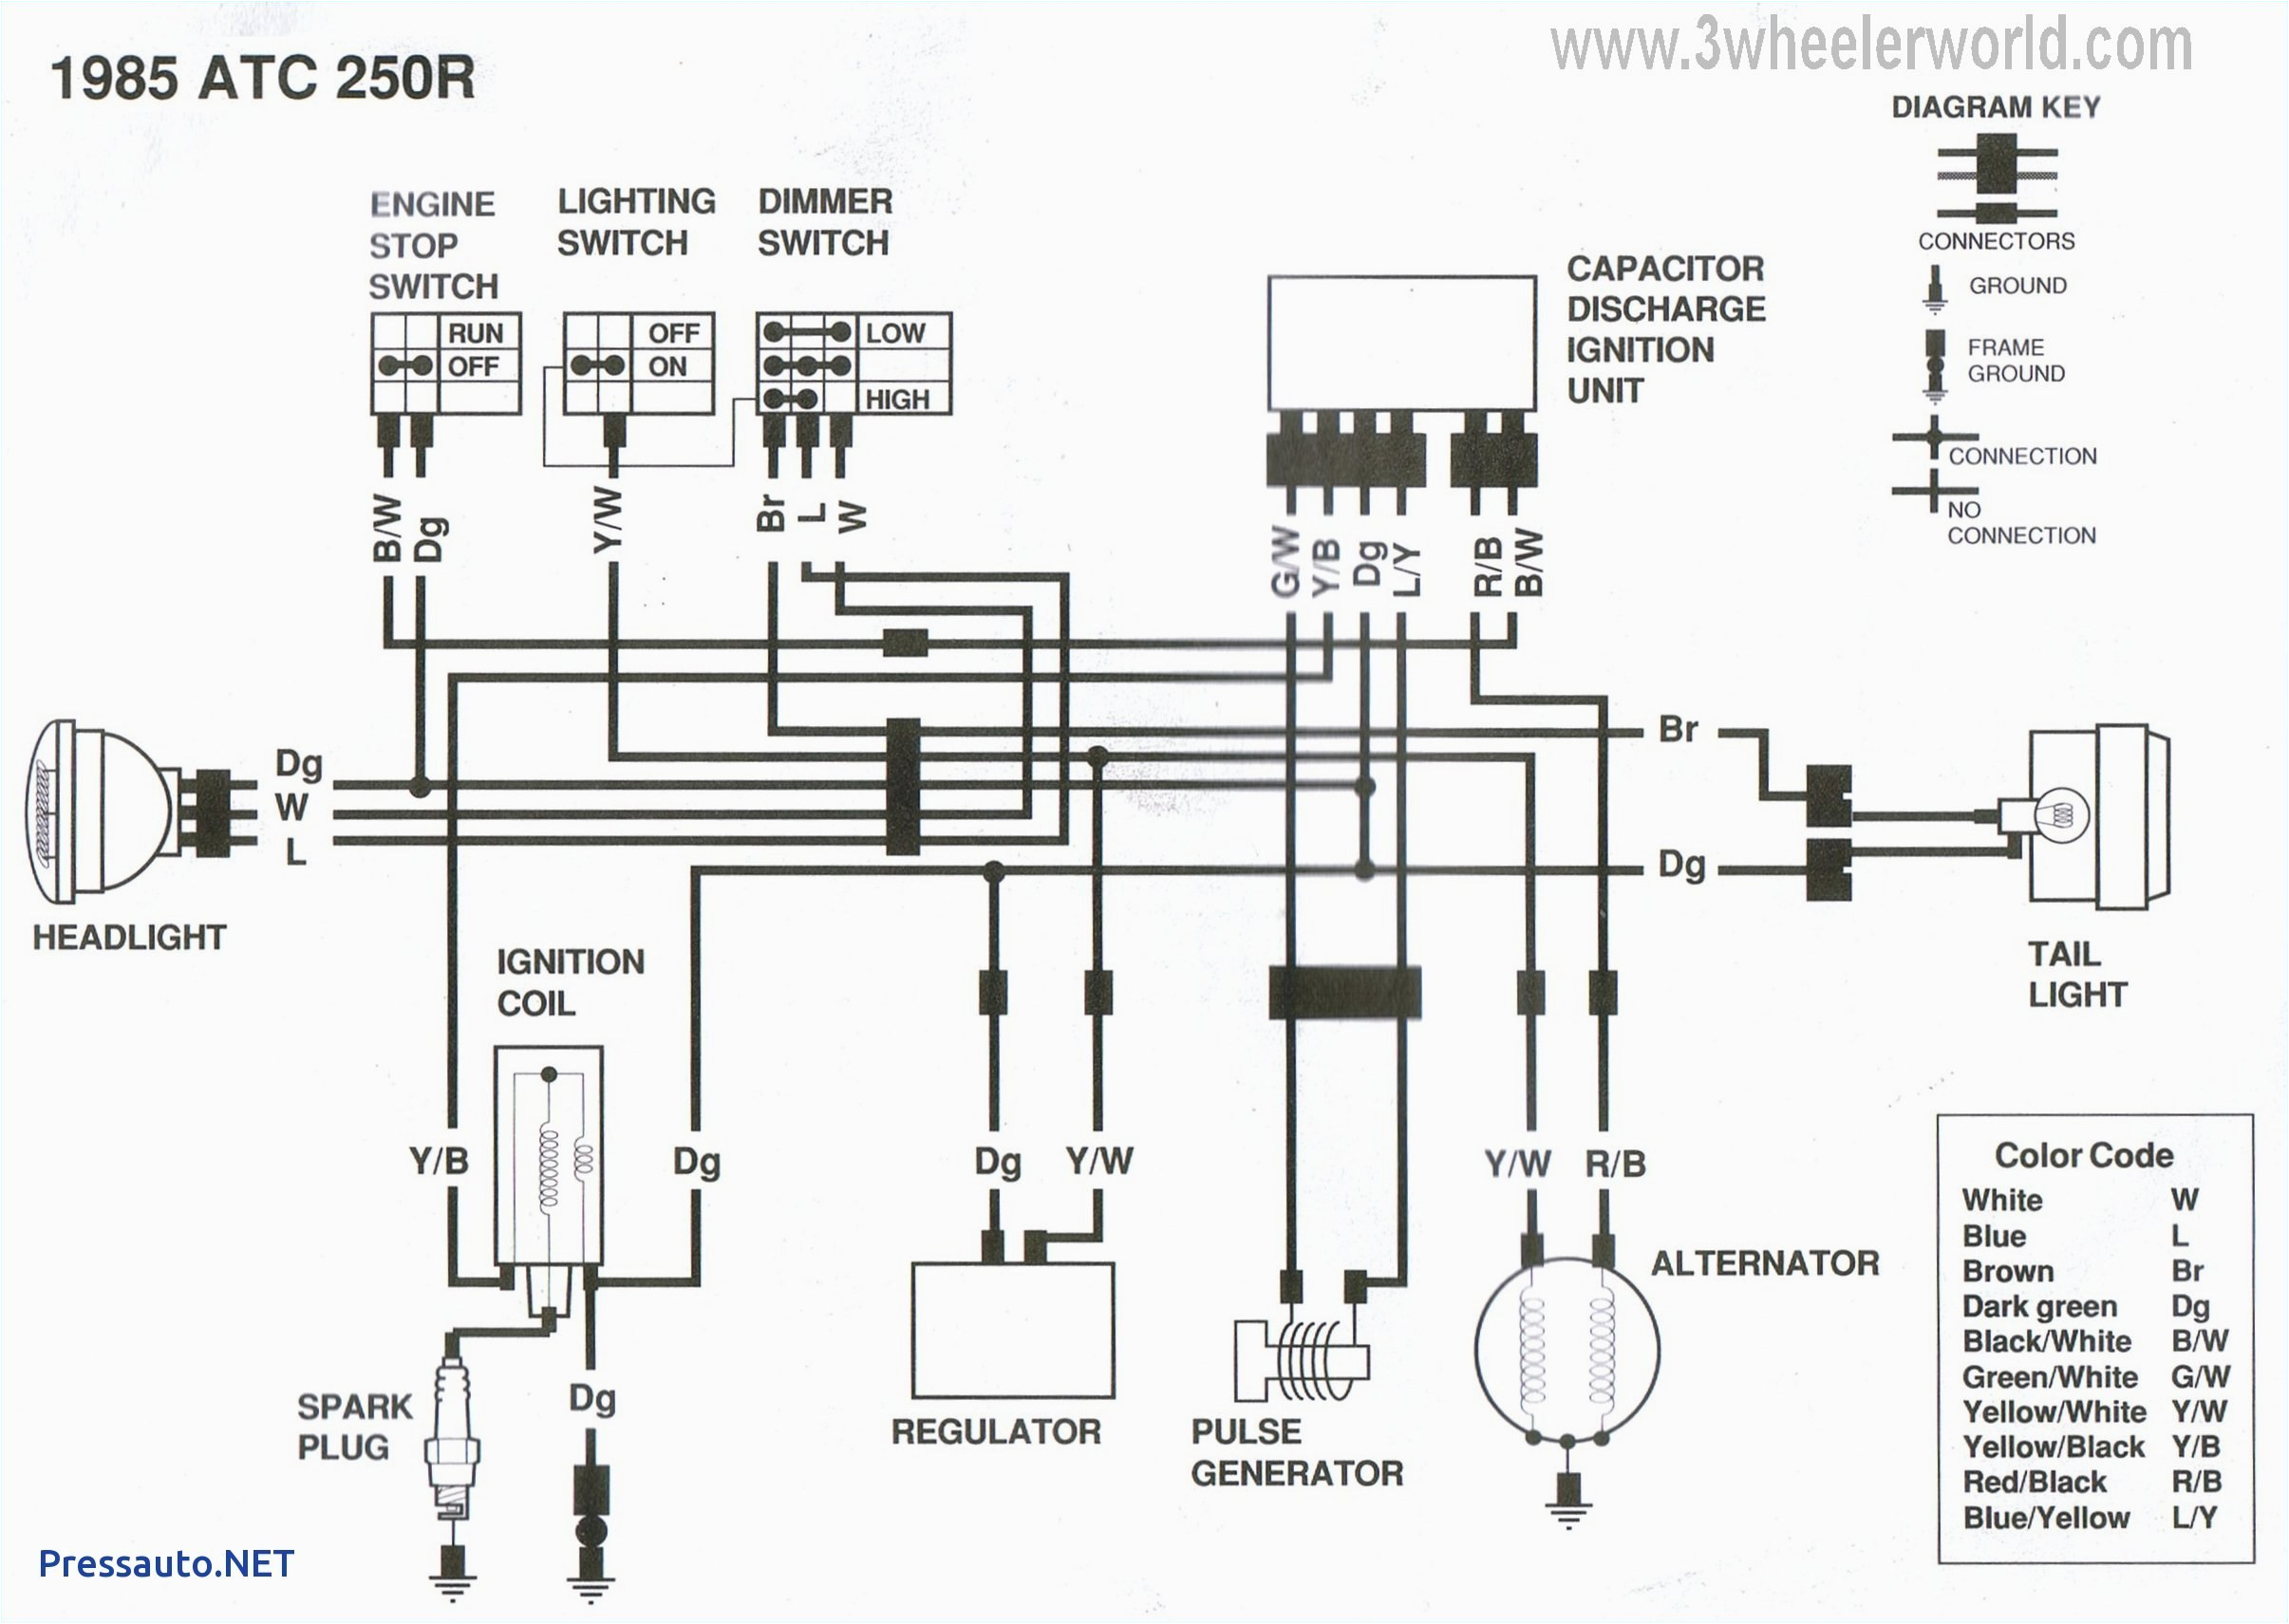 xbox 360 wiring diagram wiring diagram database wiring diagram xbox 360 power supply wiring diagram xbox 360